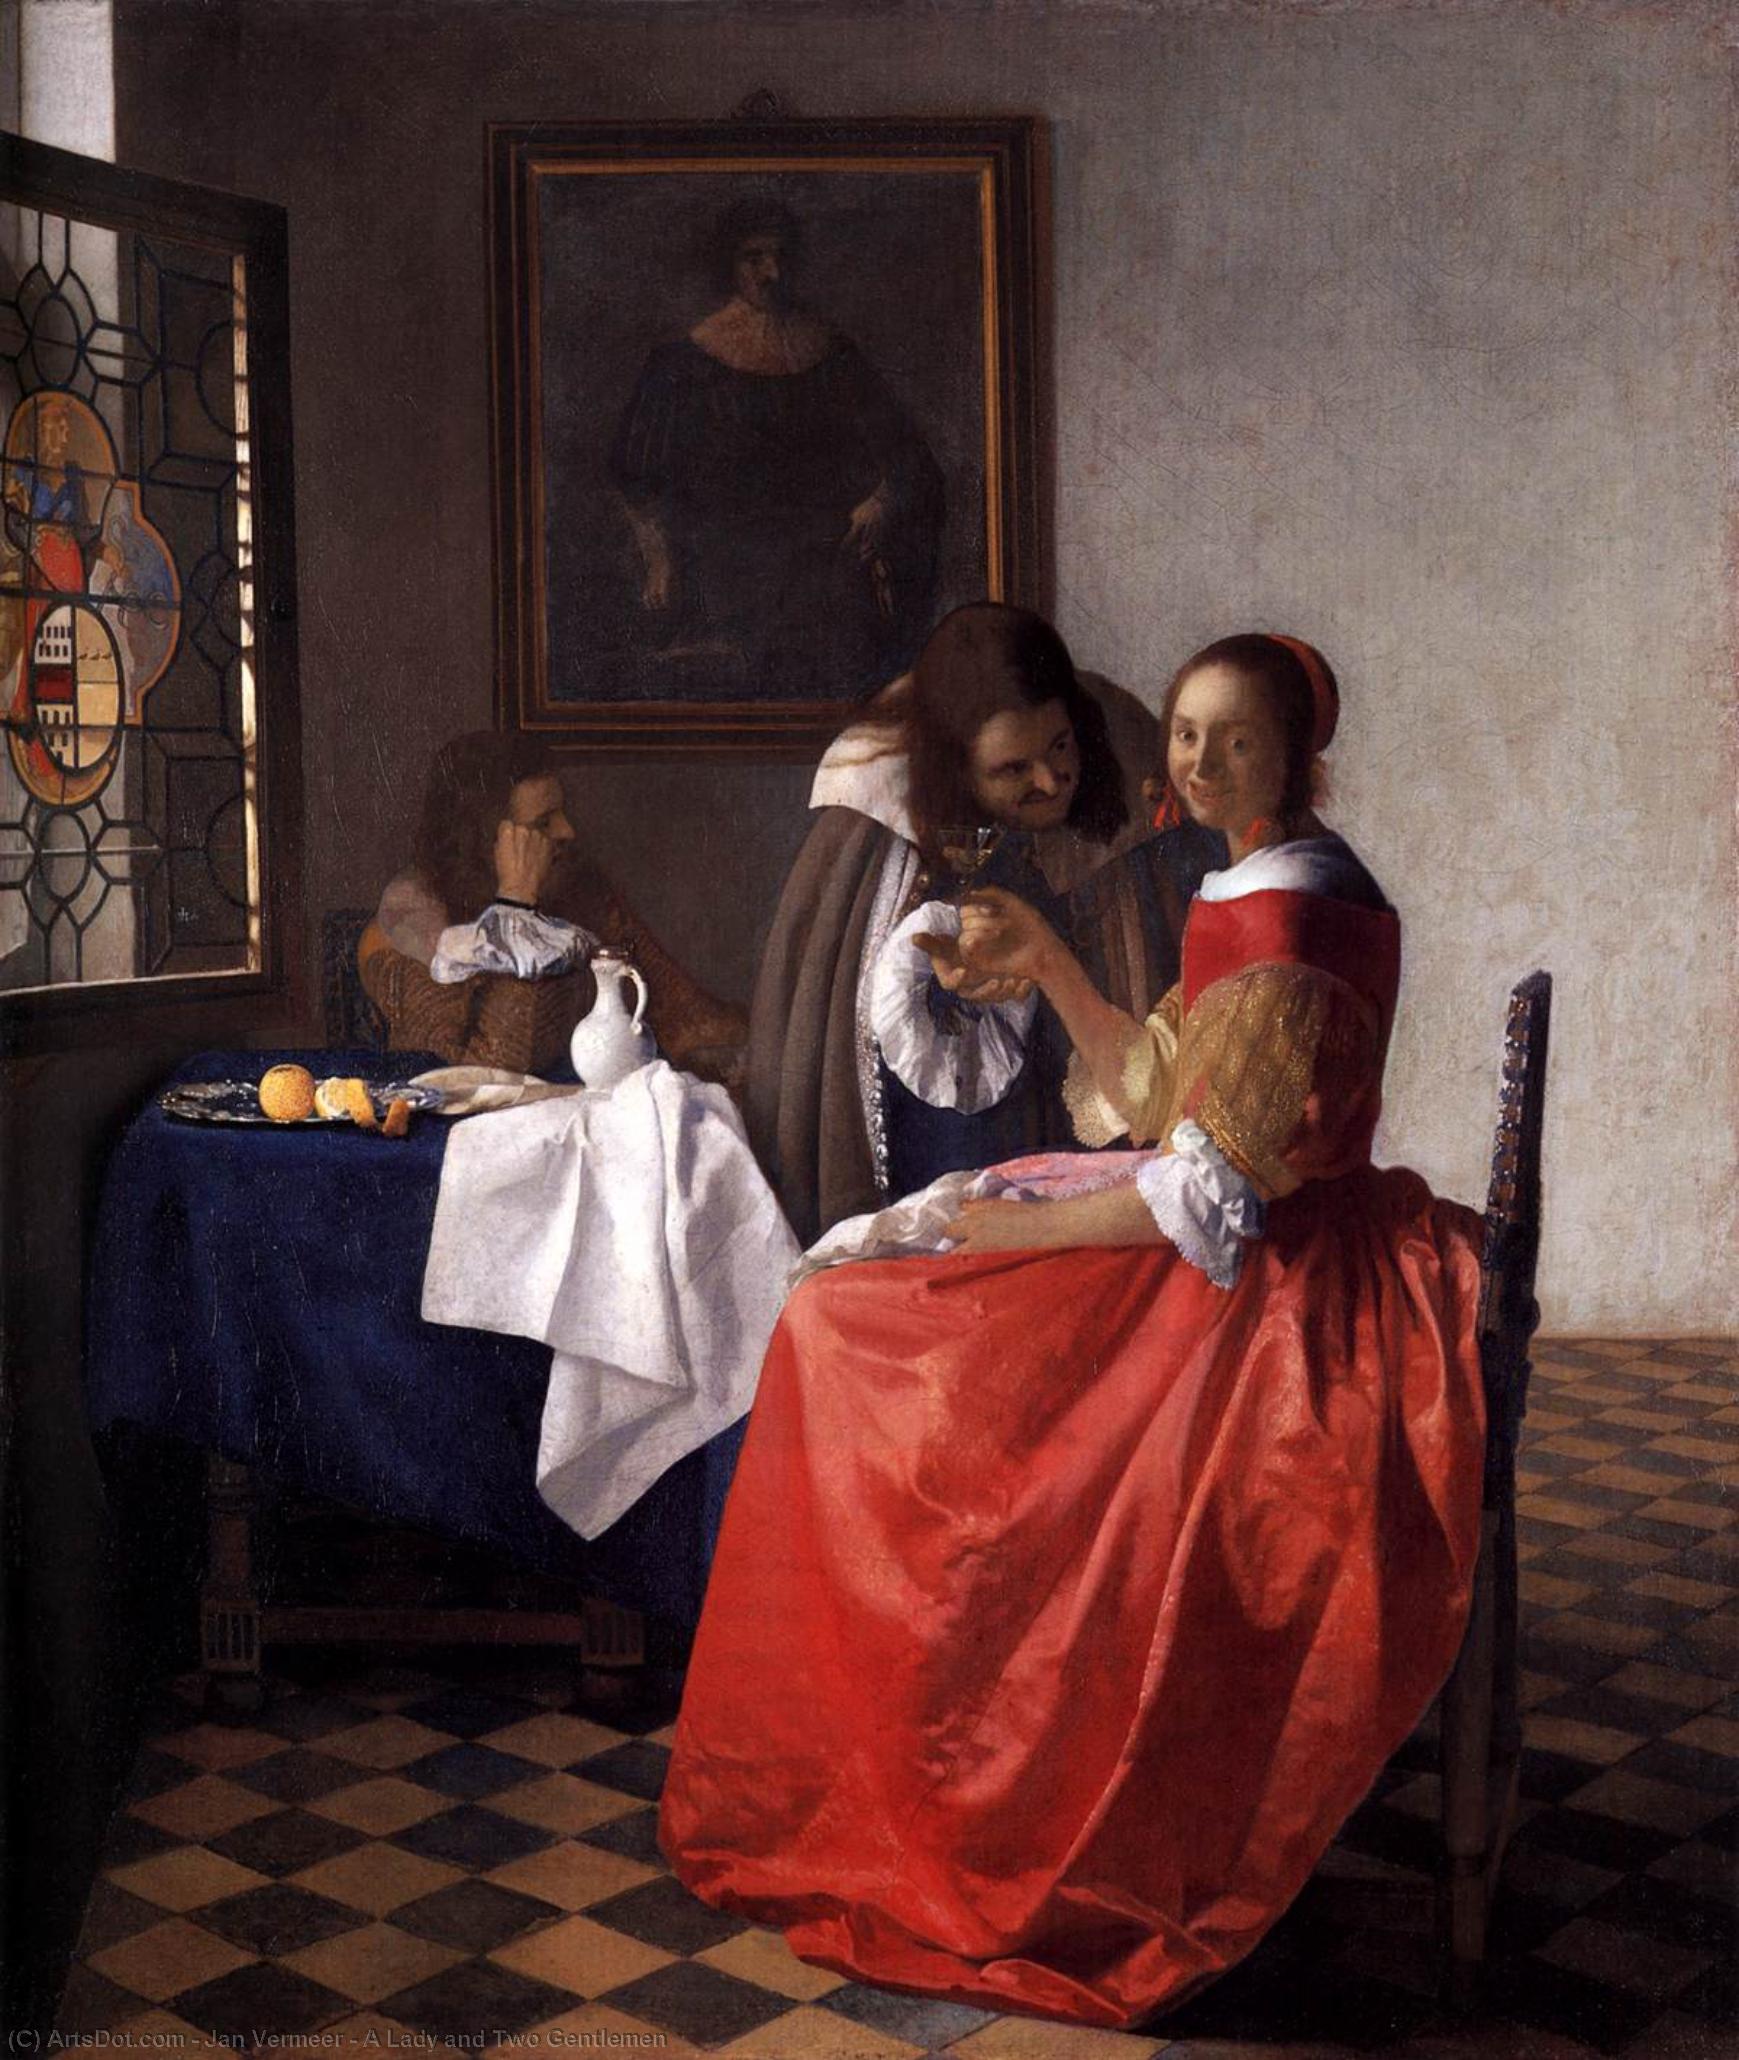 WikiOO.org - Encyclopedia of Fine Arts - Lukisan, Artwork Jan Vermeer - A Lady and Two Gentlemen